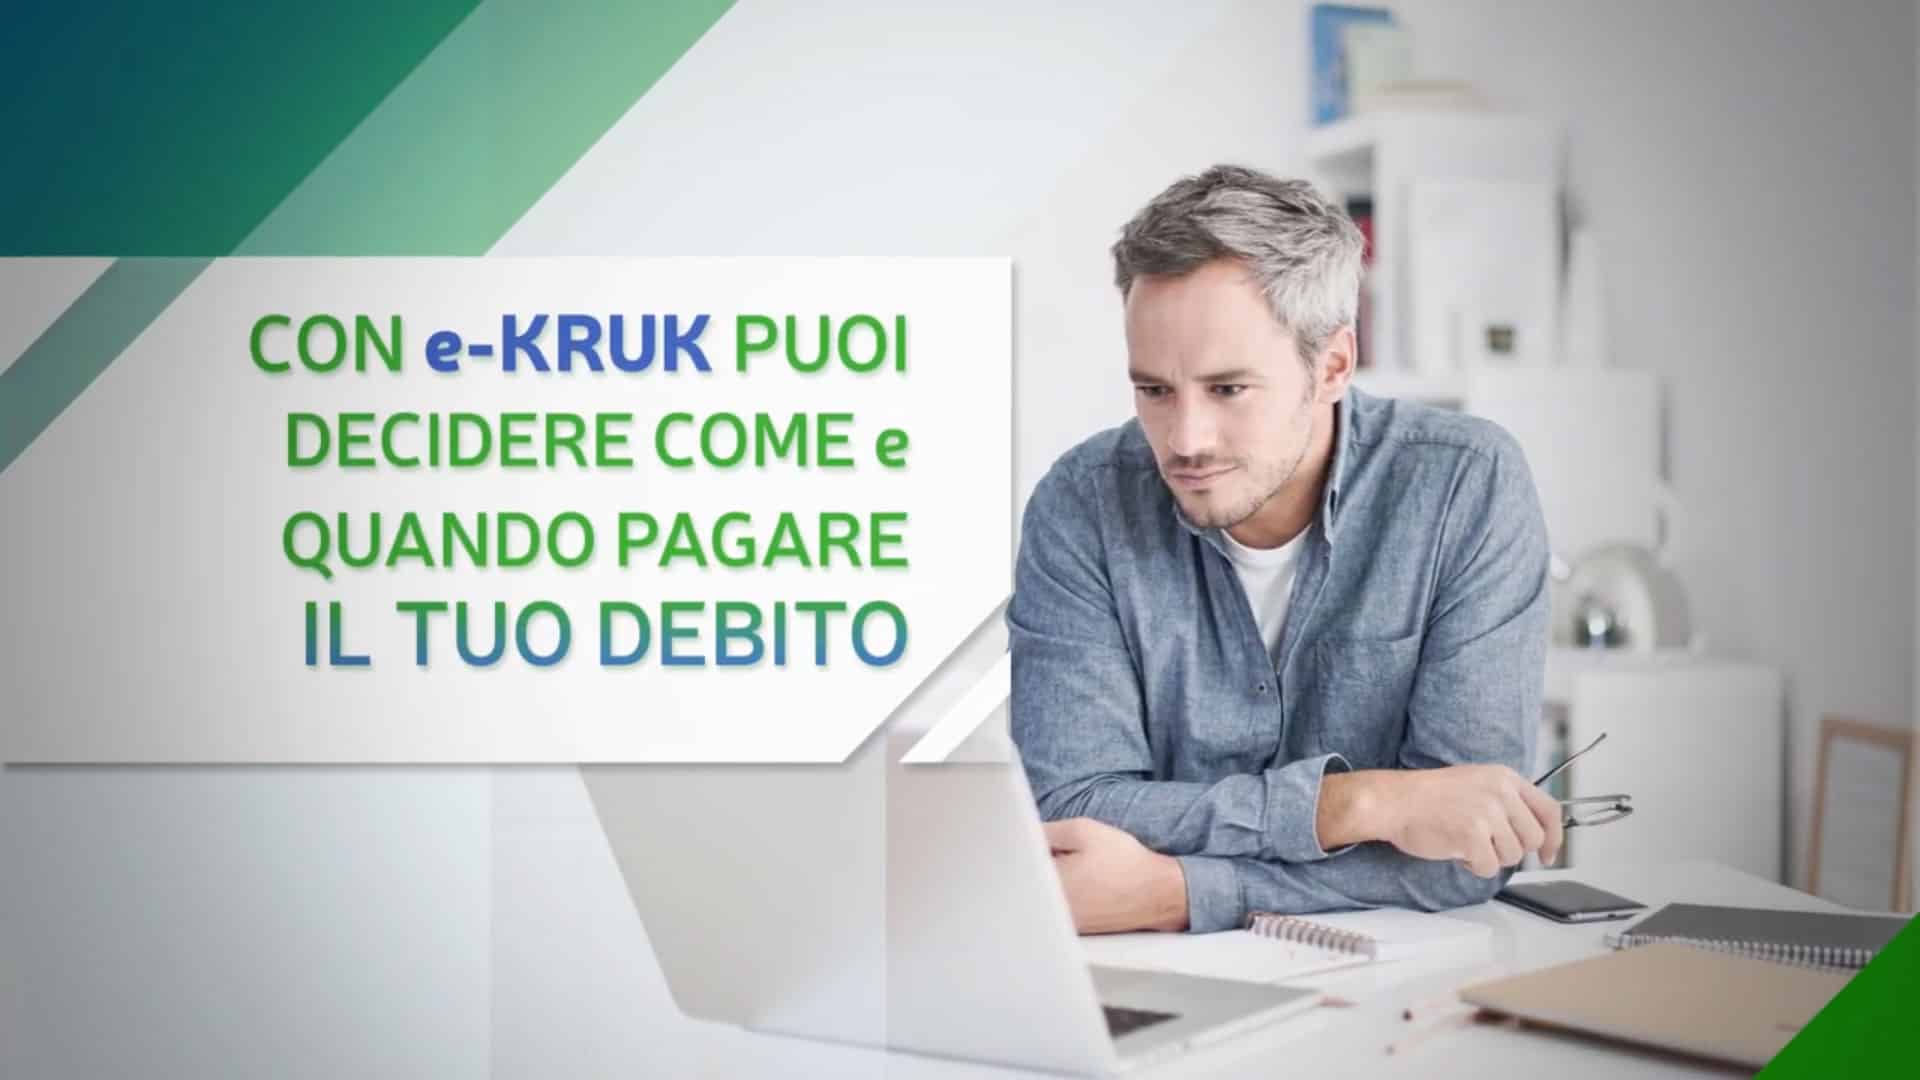 KRUK SOCIAL ADV 15sec - PIANO DI RIENTRO - Campagna promozionale per Youtube  -  Kruk Italia 2021